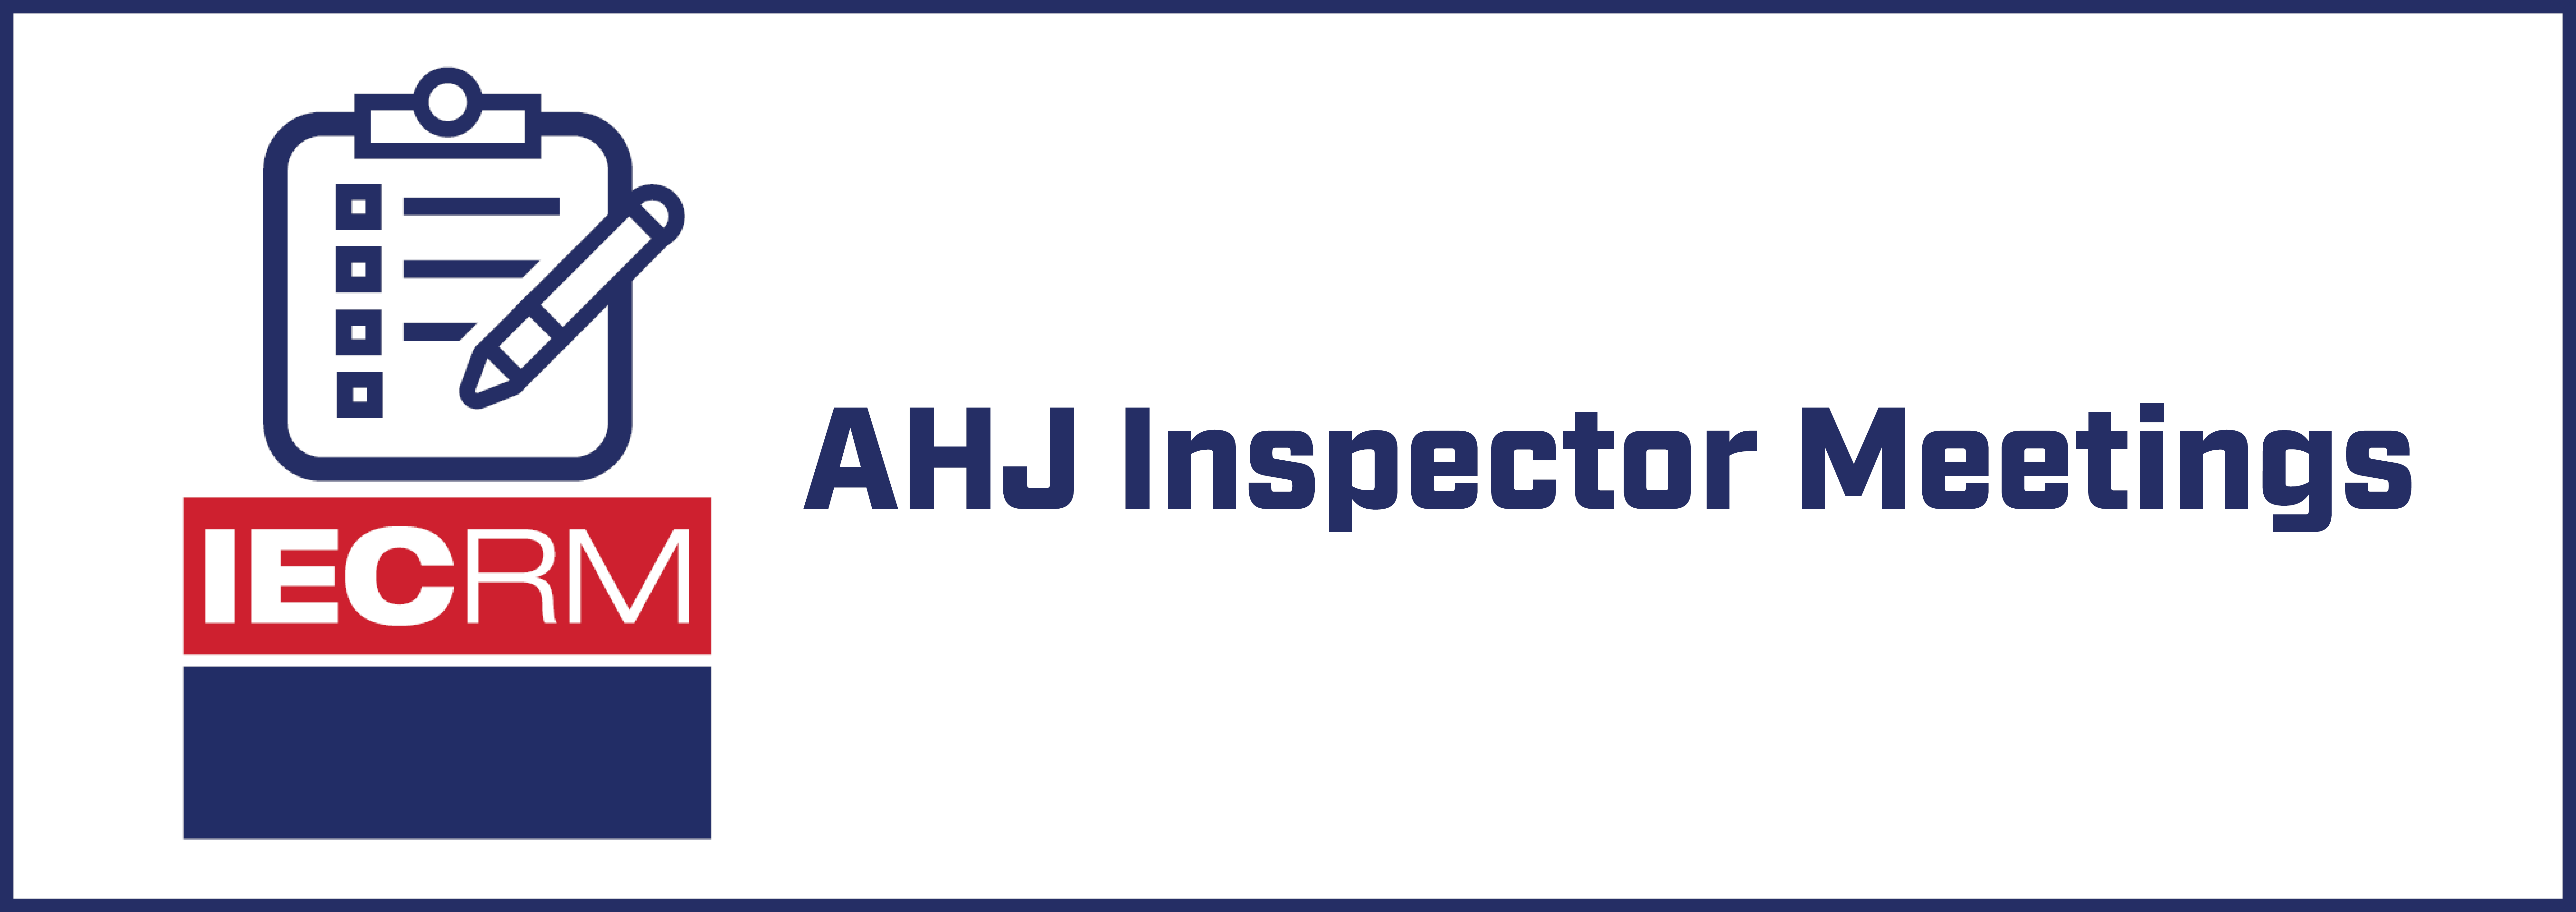 IECRM AHJ Inspectors Meeting - August 2022